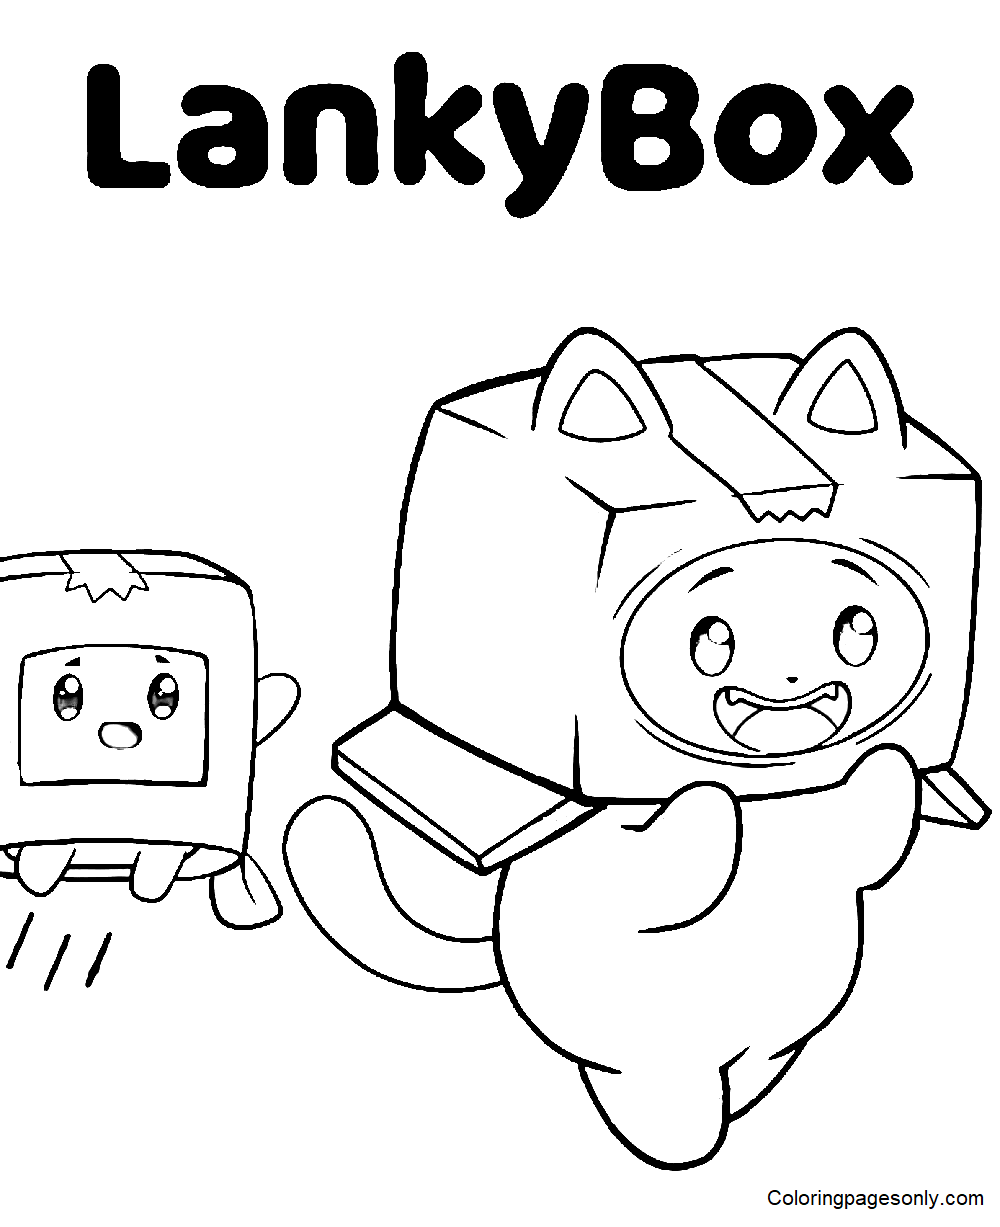 可打印的 LankyBox 表格着色页